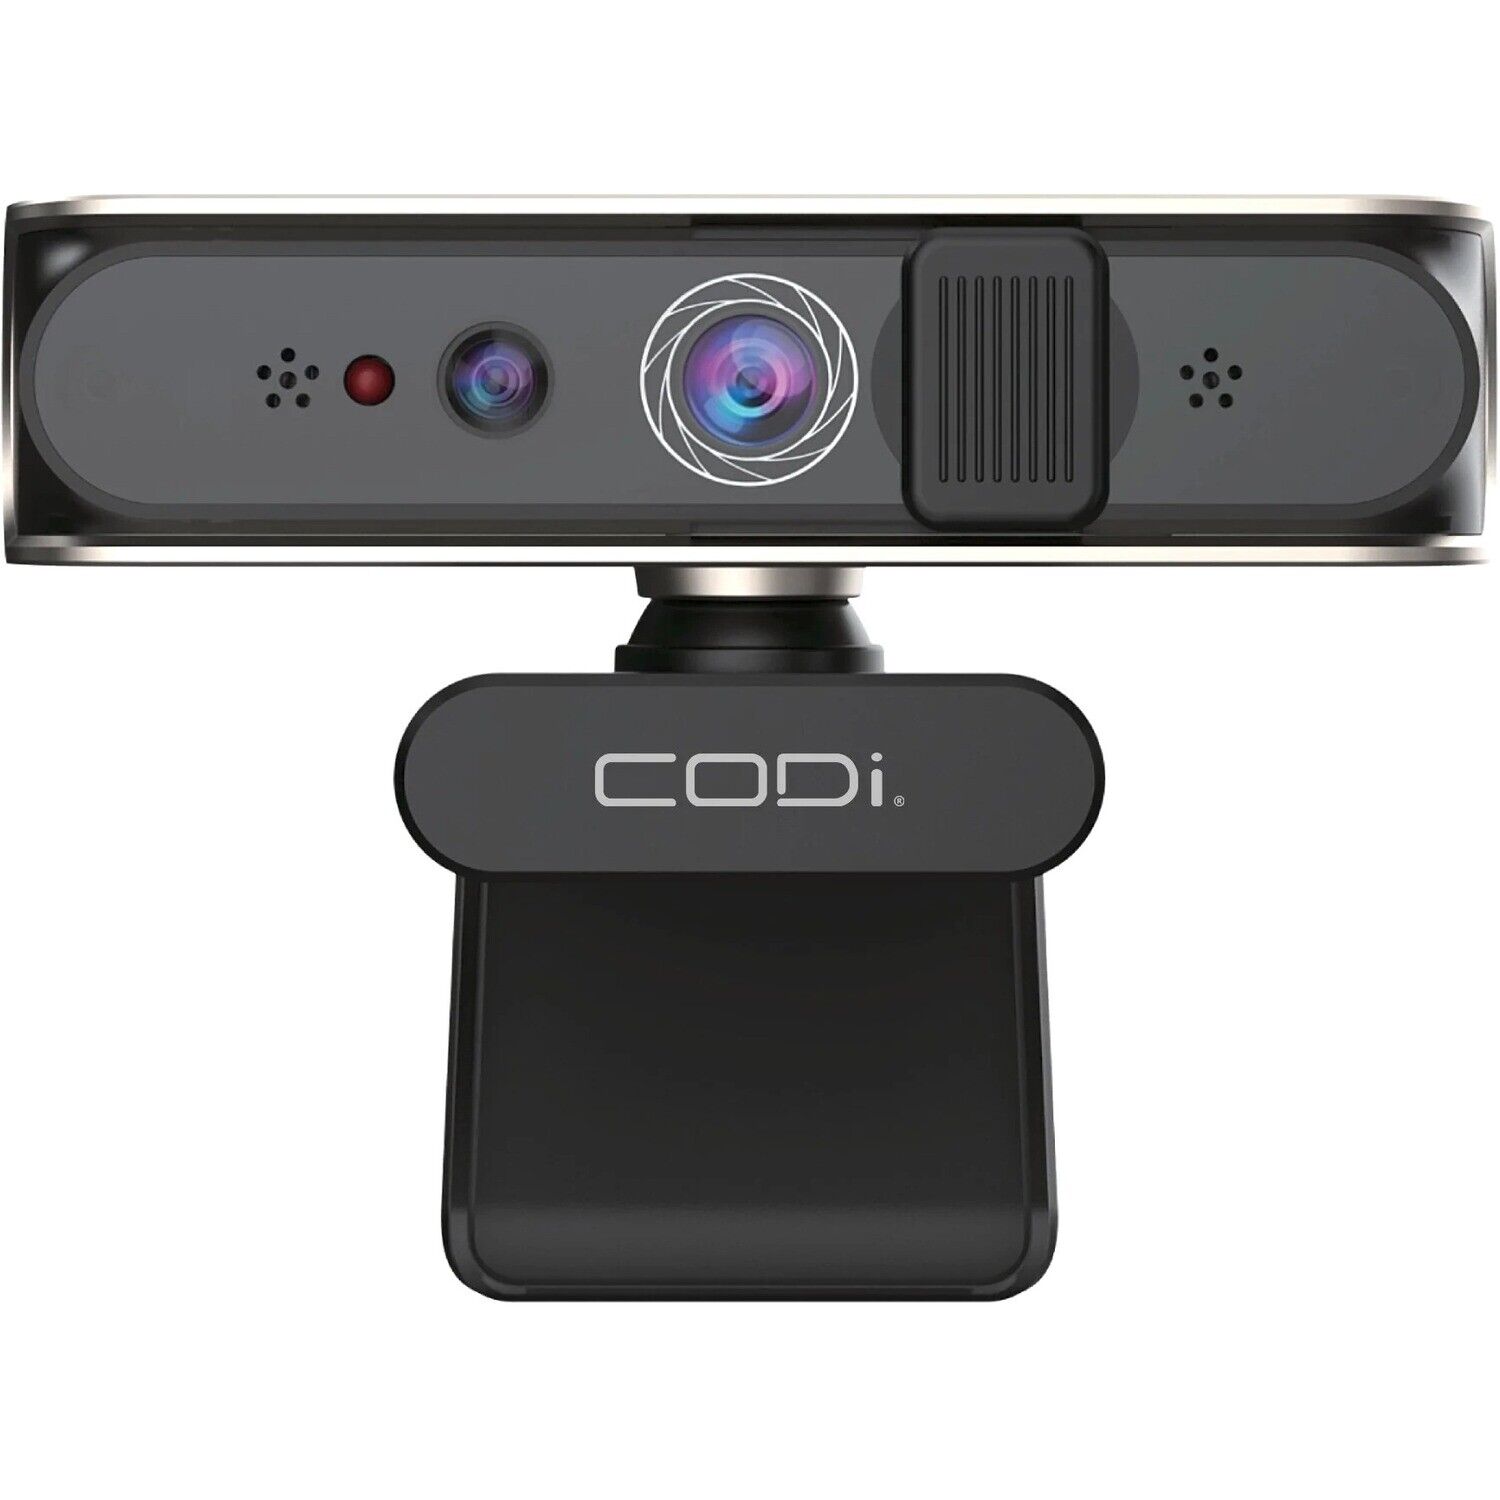 Codi A05023 Allocco 1080p Ir Facial Perp Recognition Webcam Windows Hello